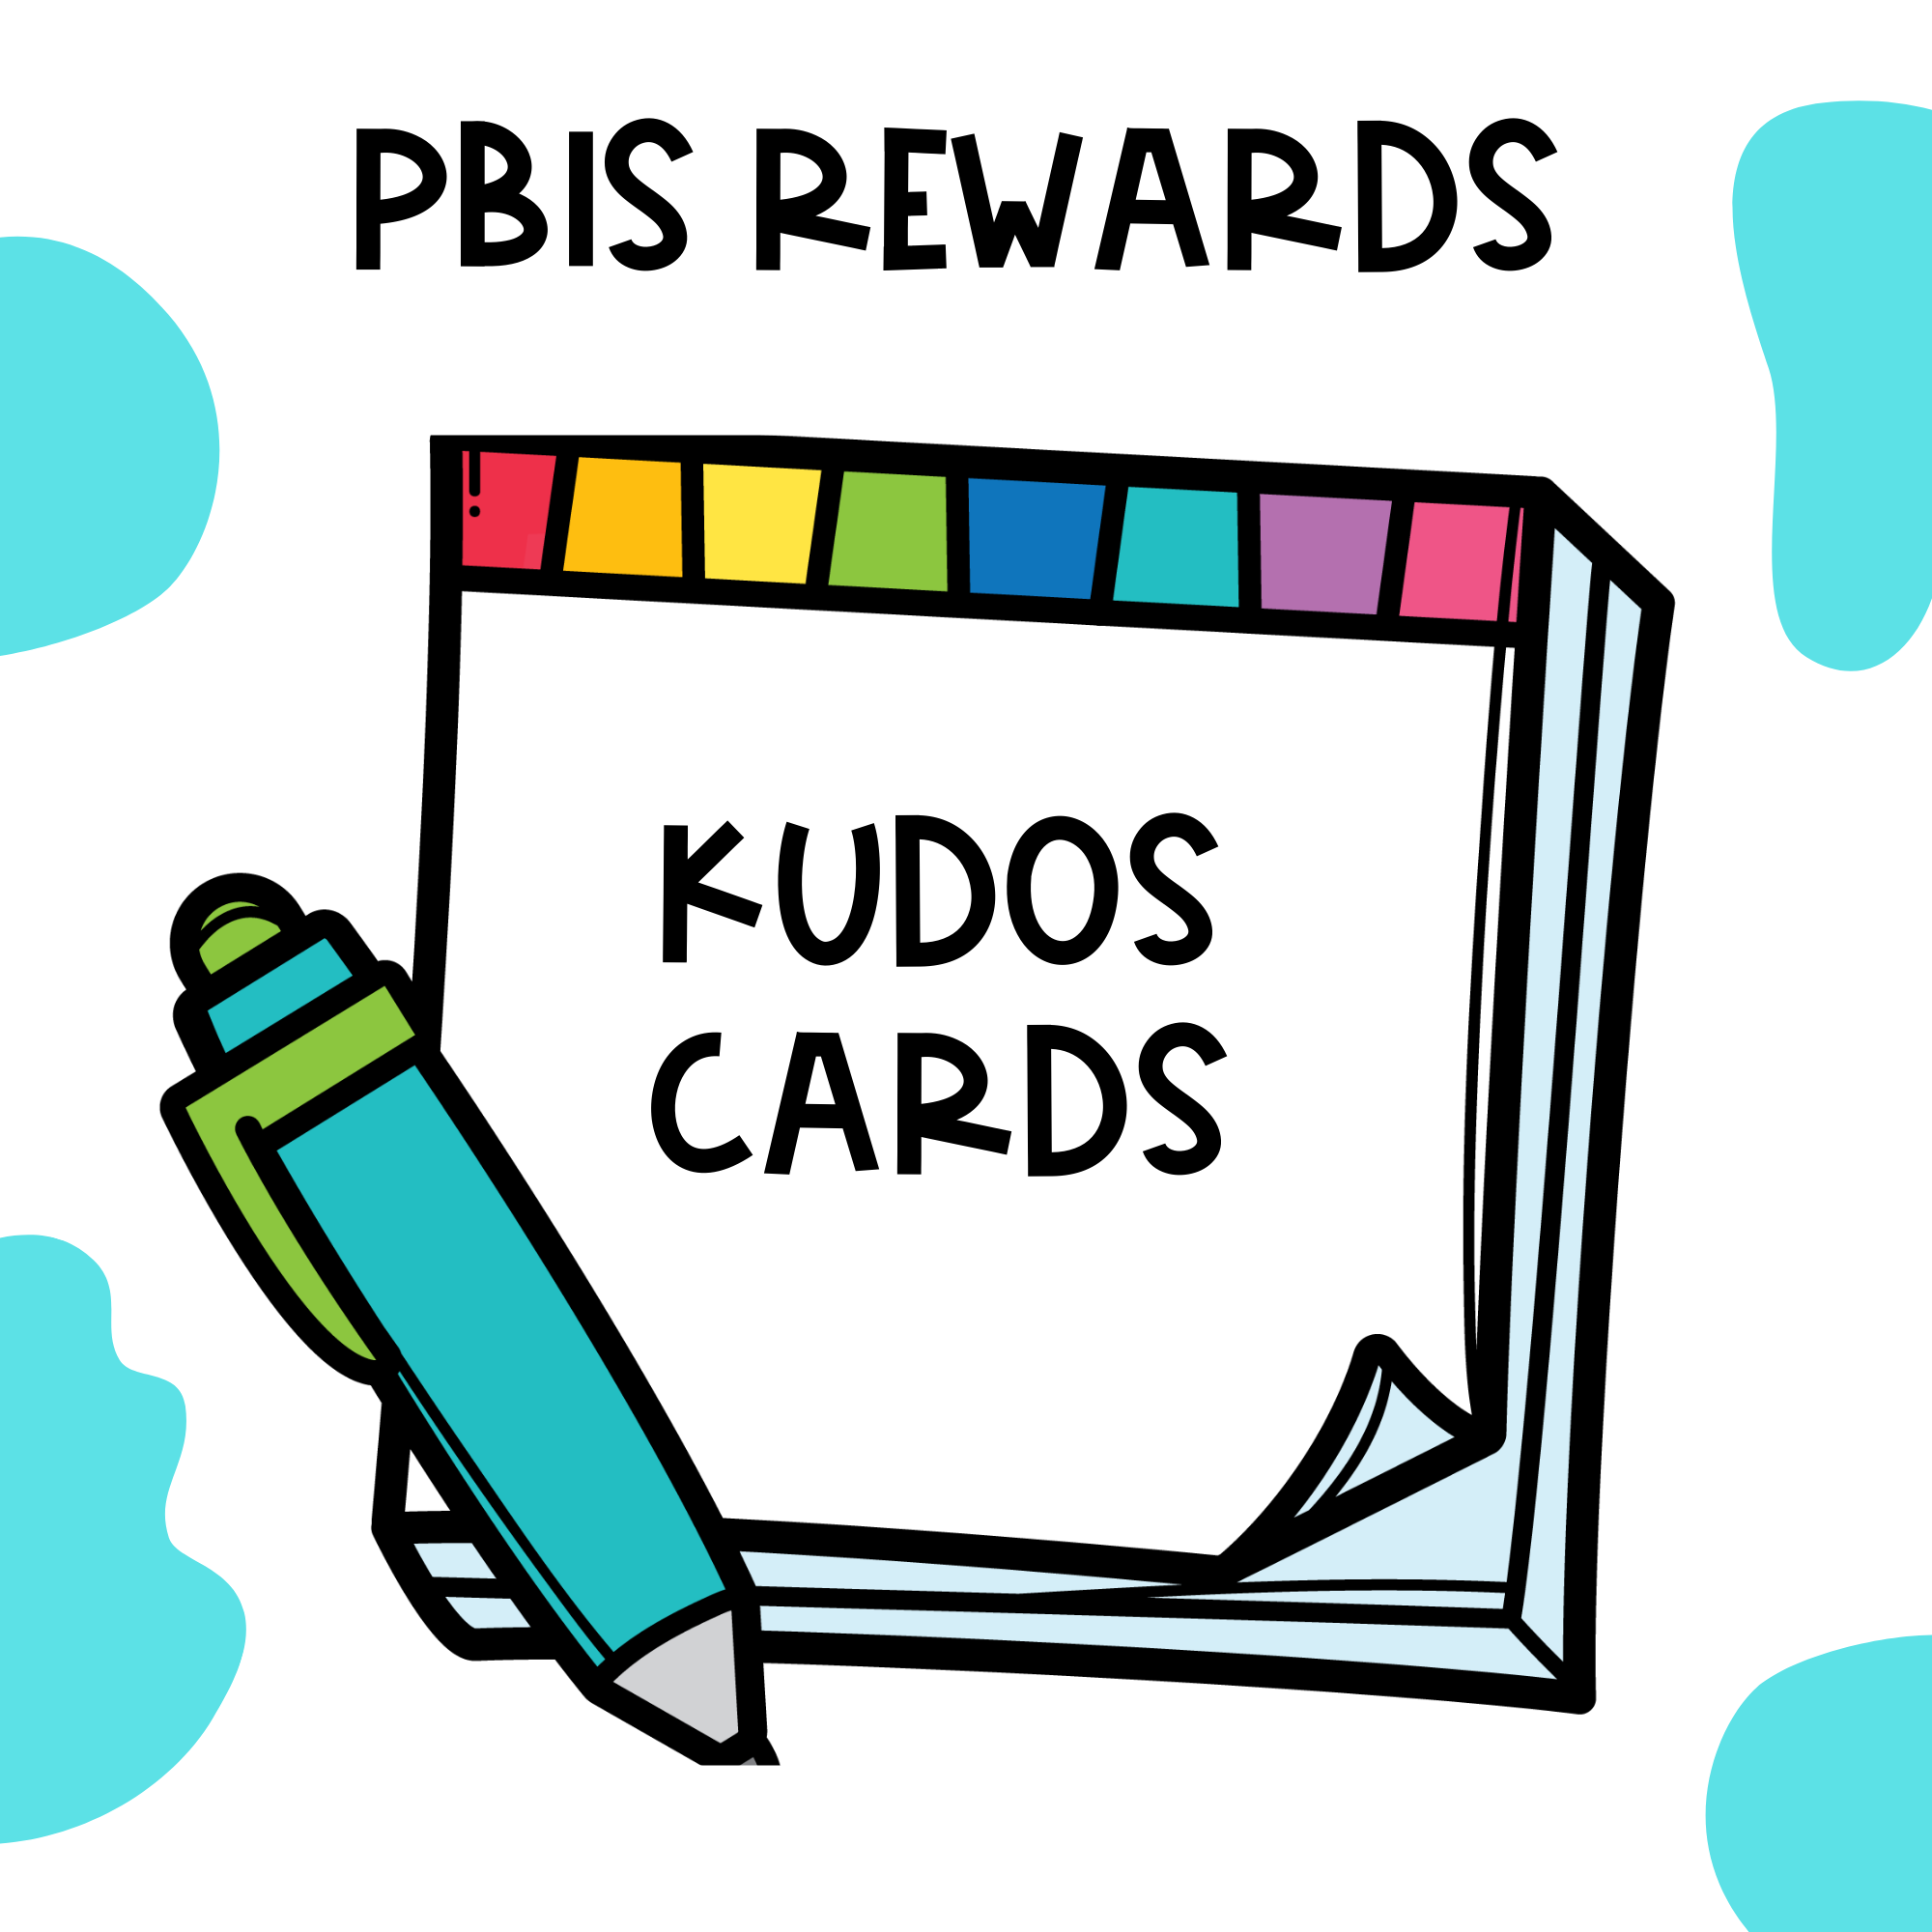 PBIS Reward-Kudos Card Set